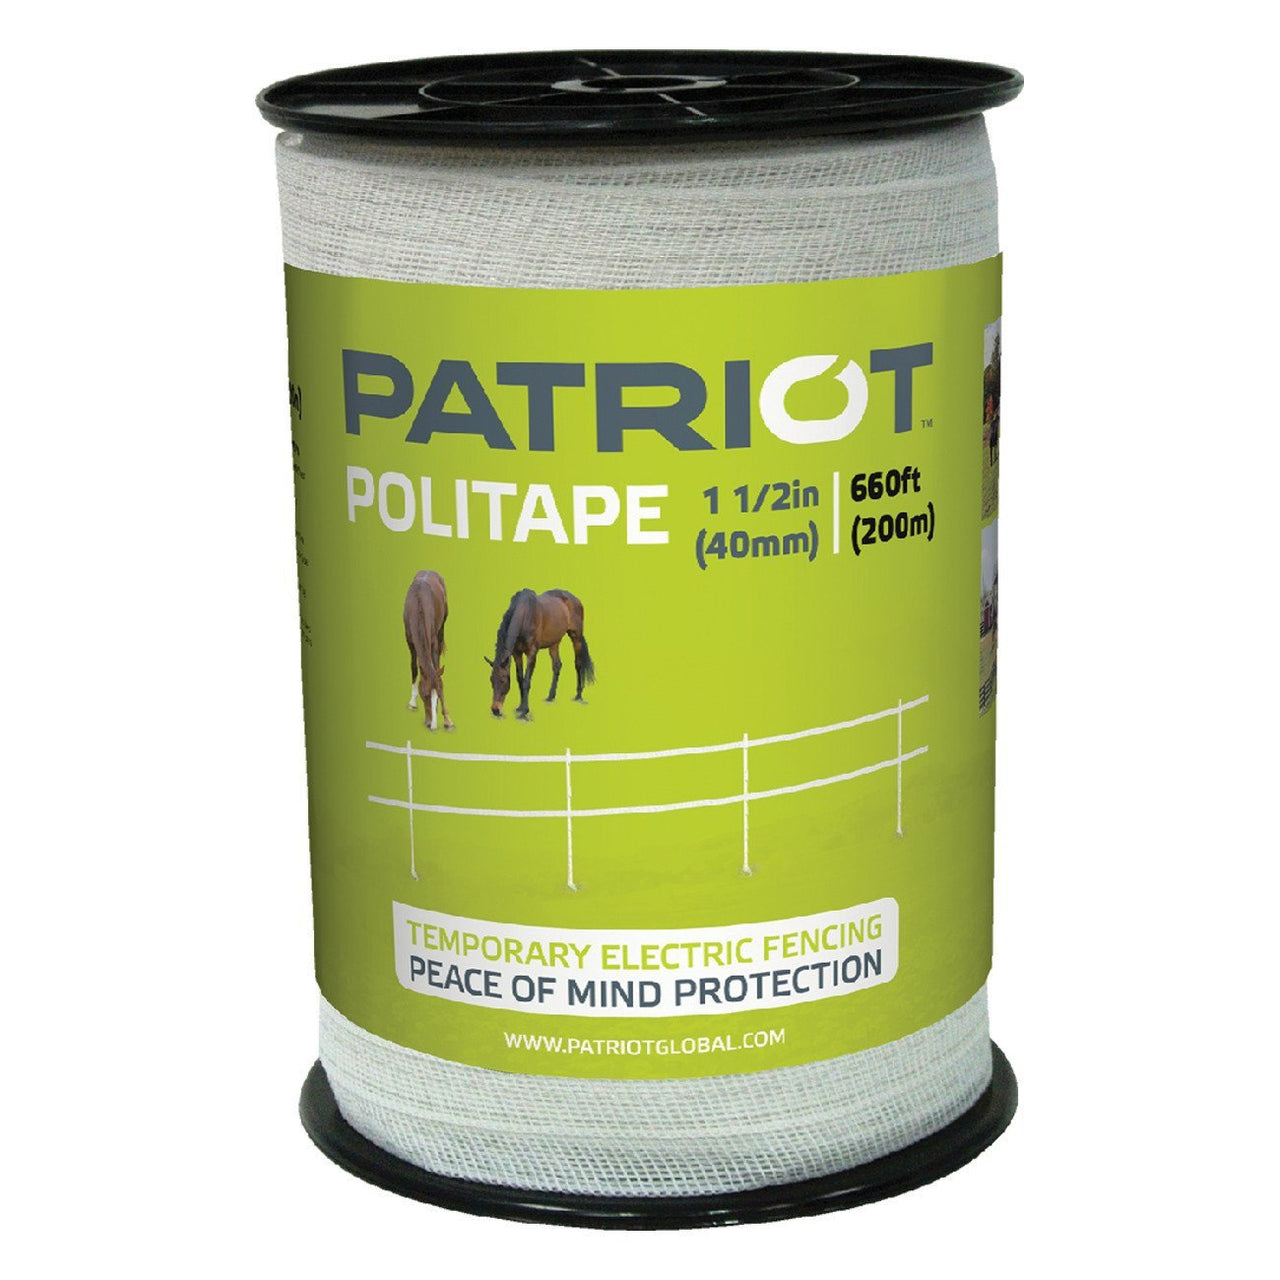 Patriot 1 1/2 Politape - 660 - Fencing Patriot - Canada